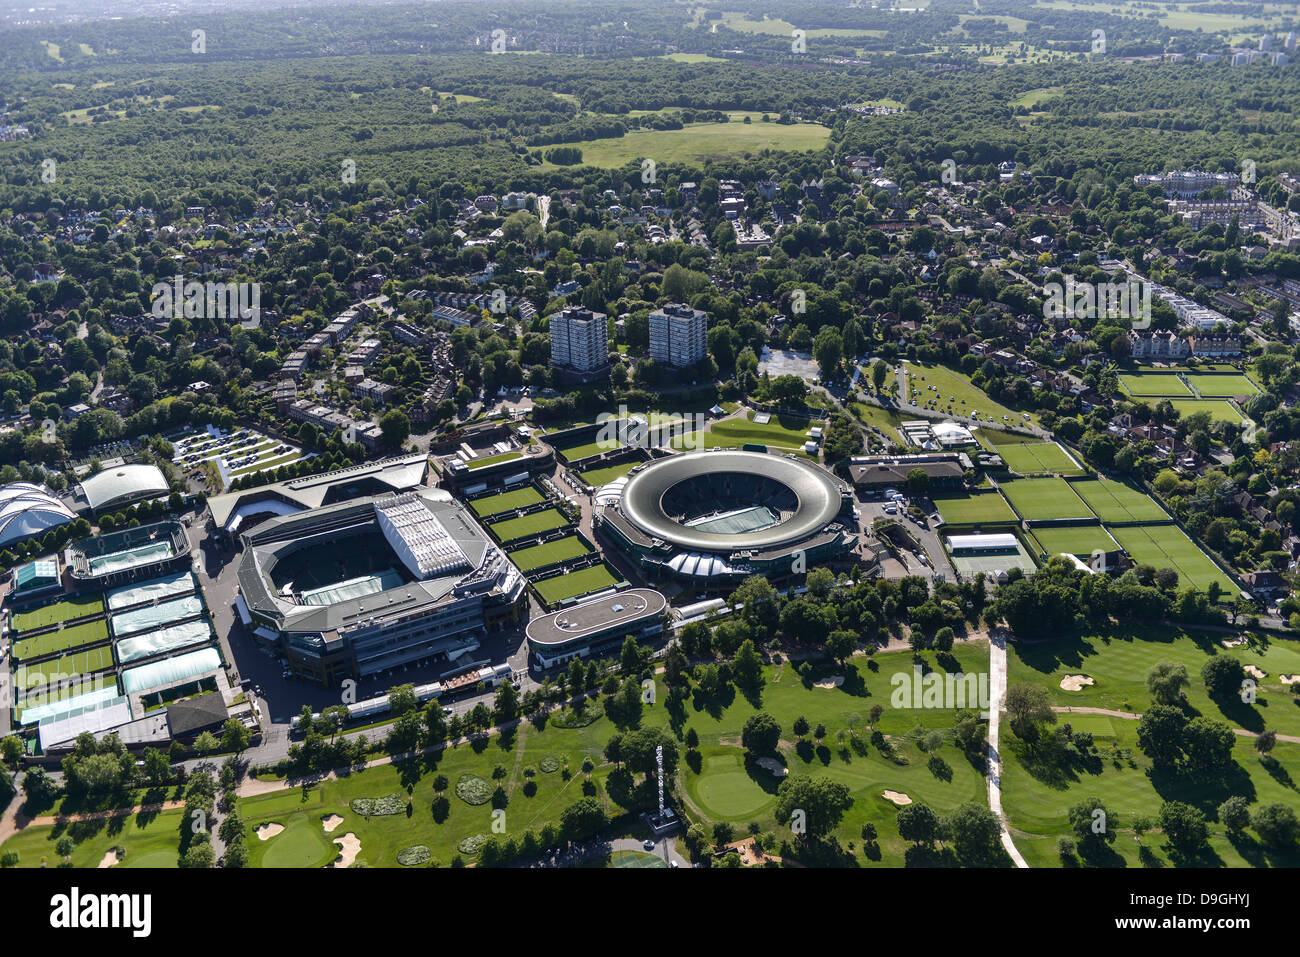 Aerial photograph of Wimbledon Stock Photo